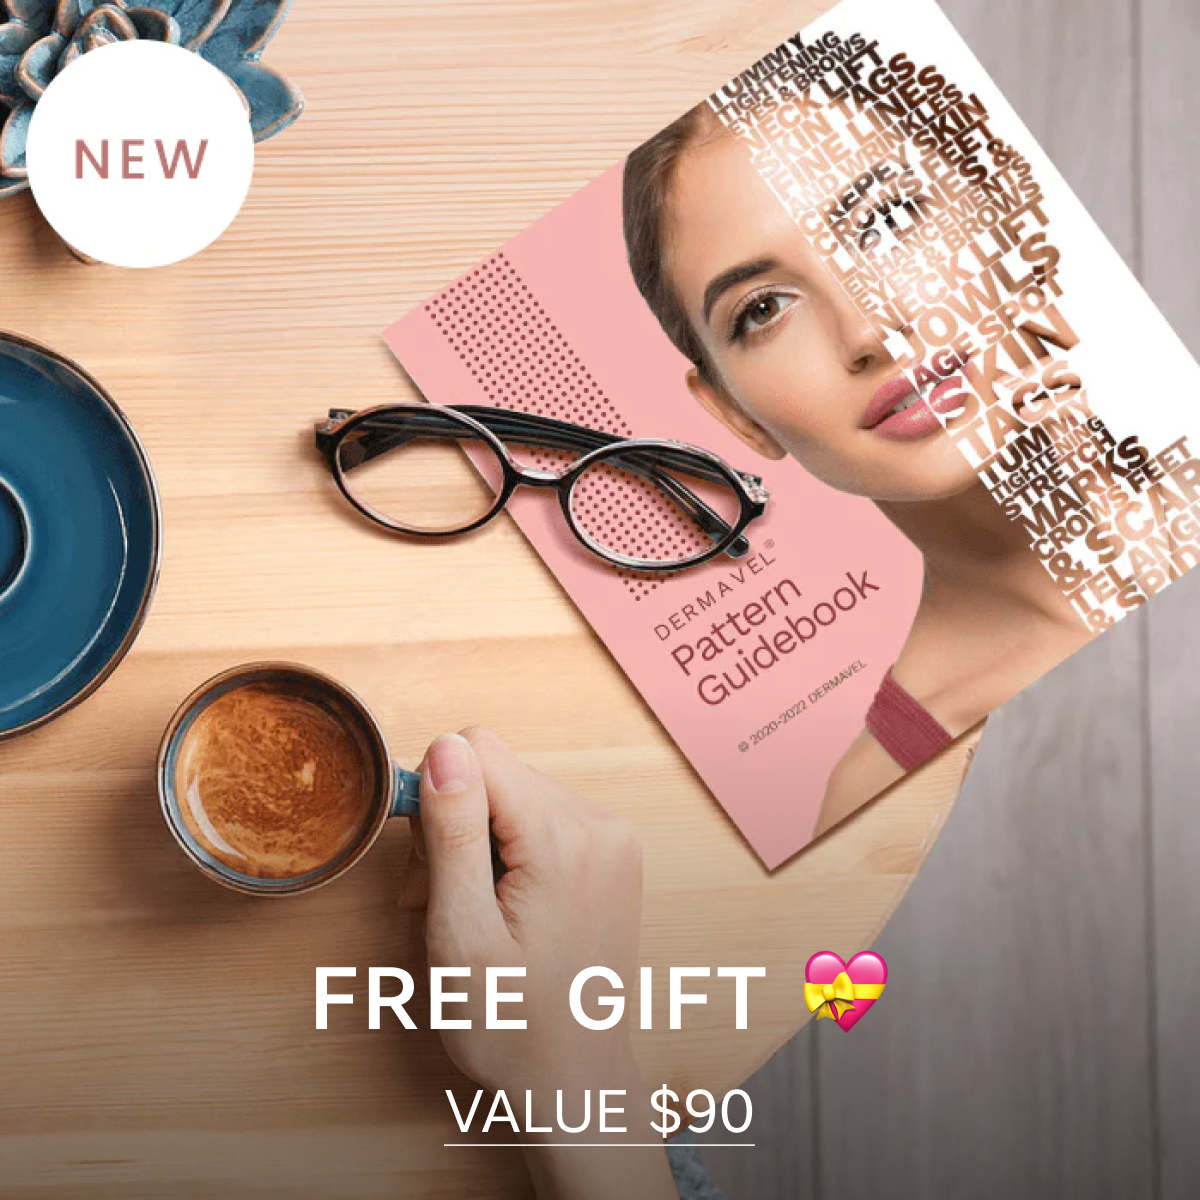 Offre groupée : Kit Ultimate Beauty Spa (25x) + Pack de réparation (2040 pièces) + Guide gratuit